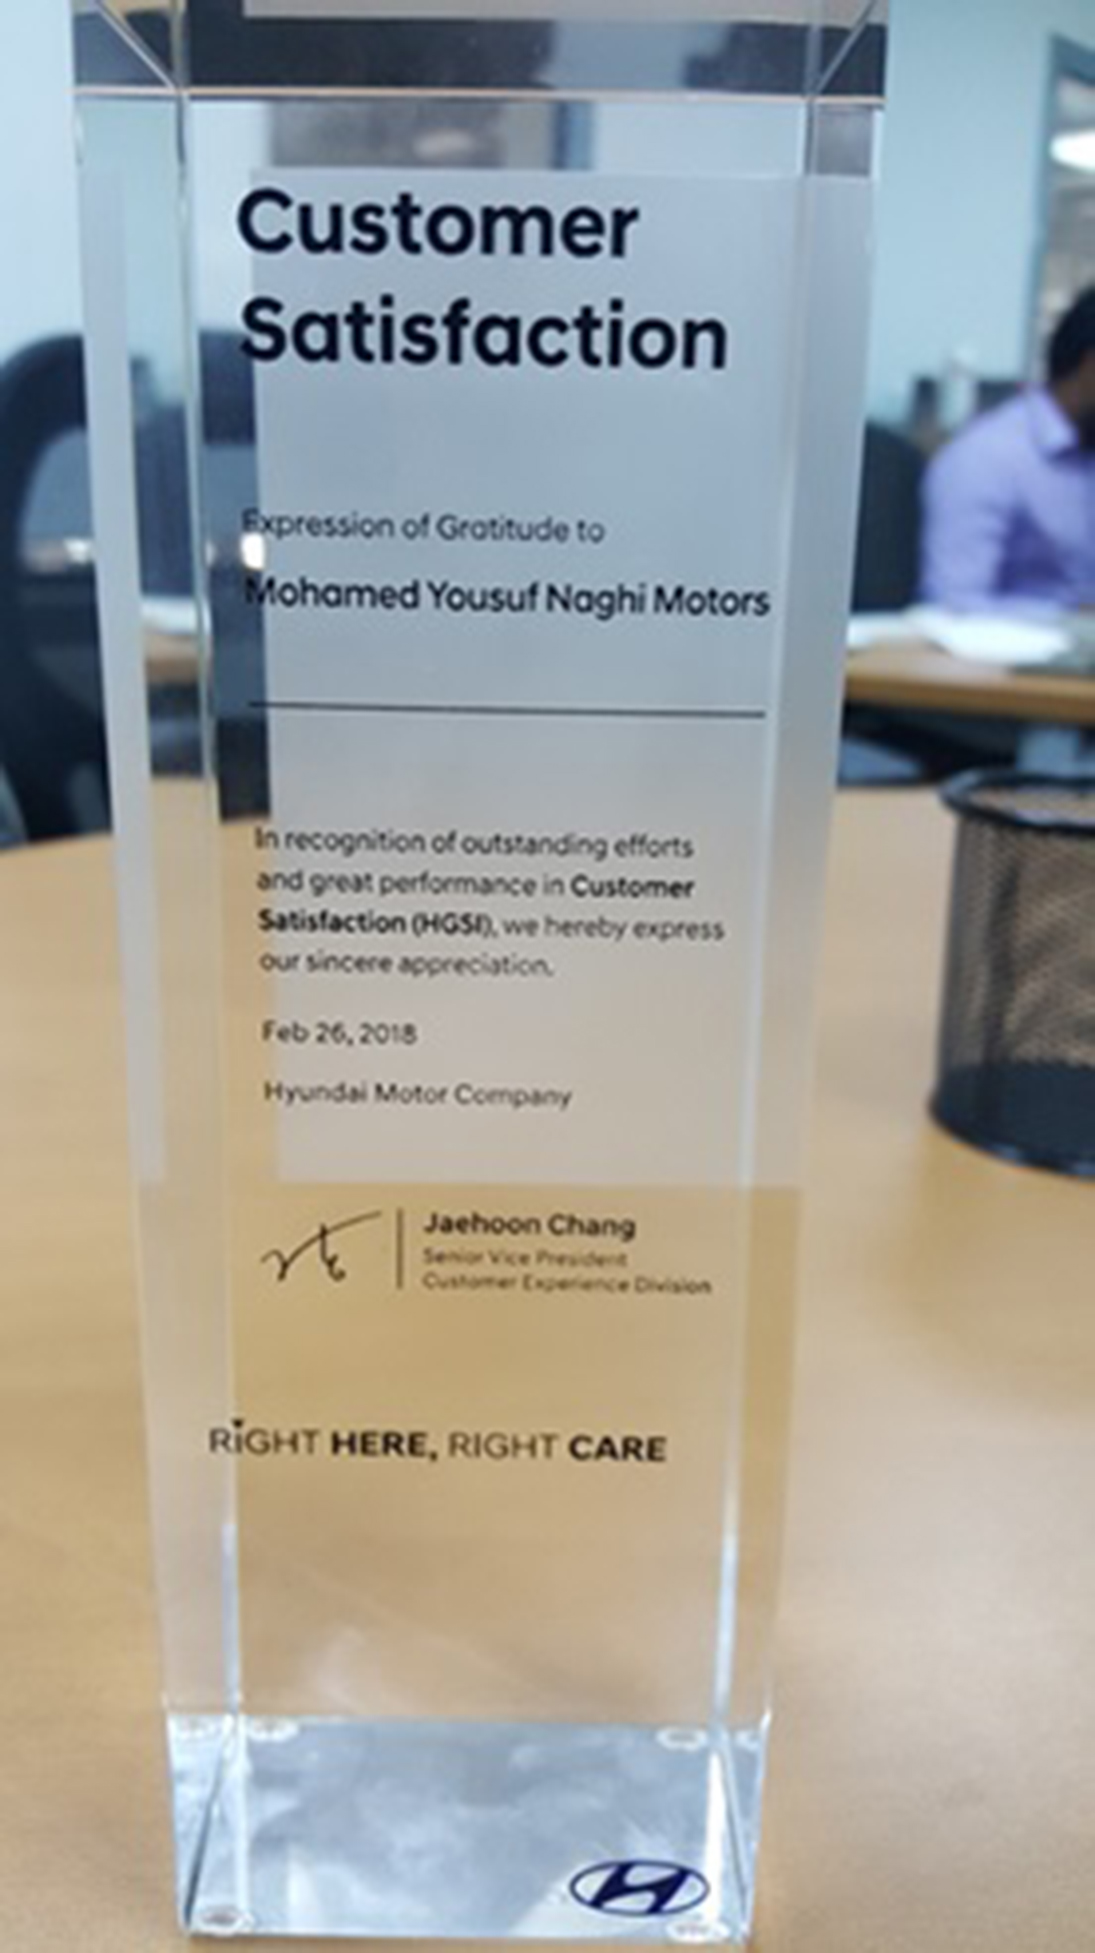 شركة محمد يوسف ناغي للسيارات "هيونداي" تحقق جائزة التميز العالمية لخدمات ما بعد البيع 3